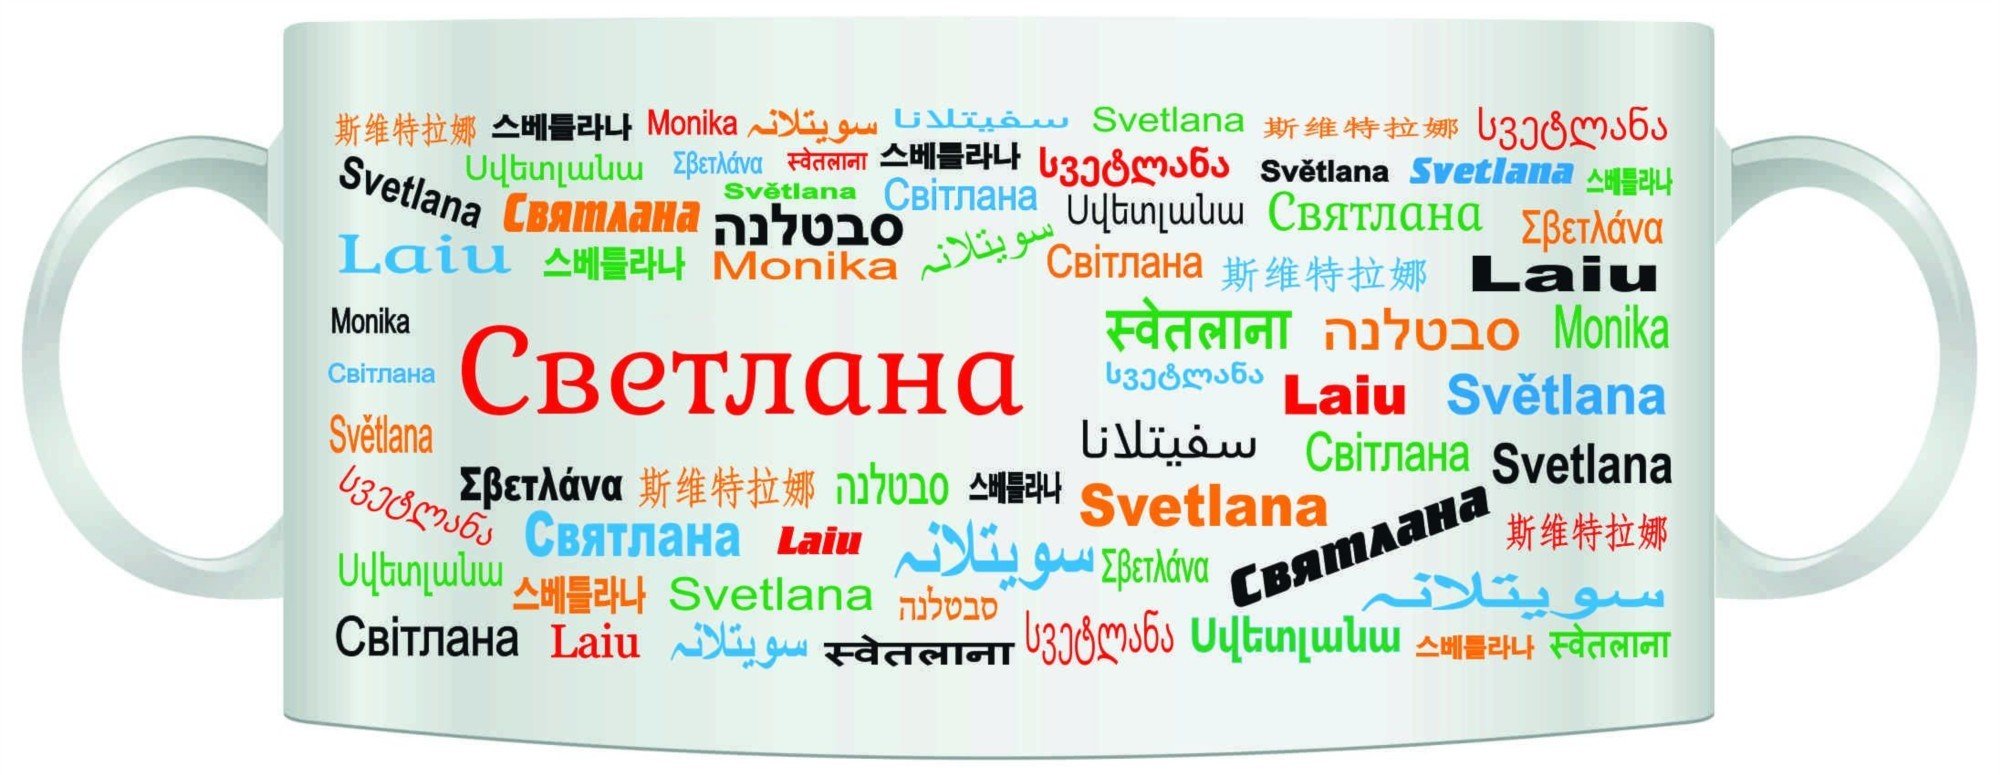 Перевод имен на разные языки